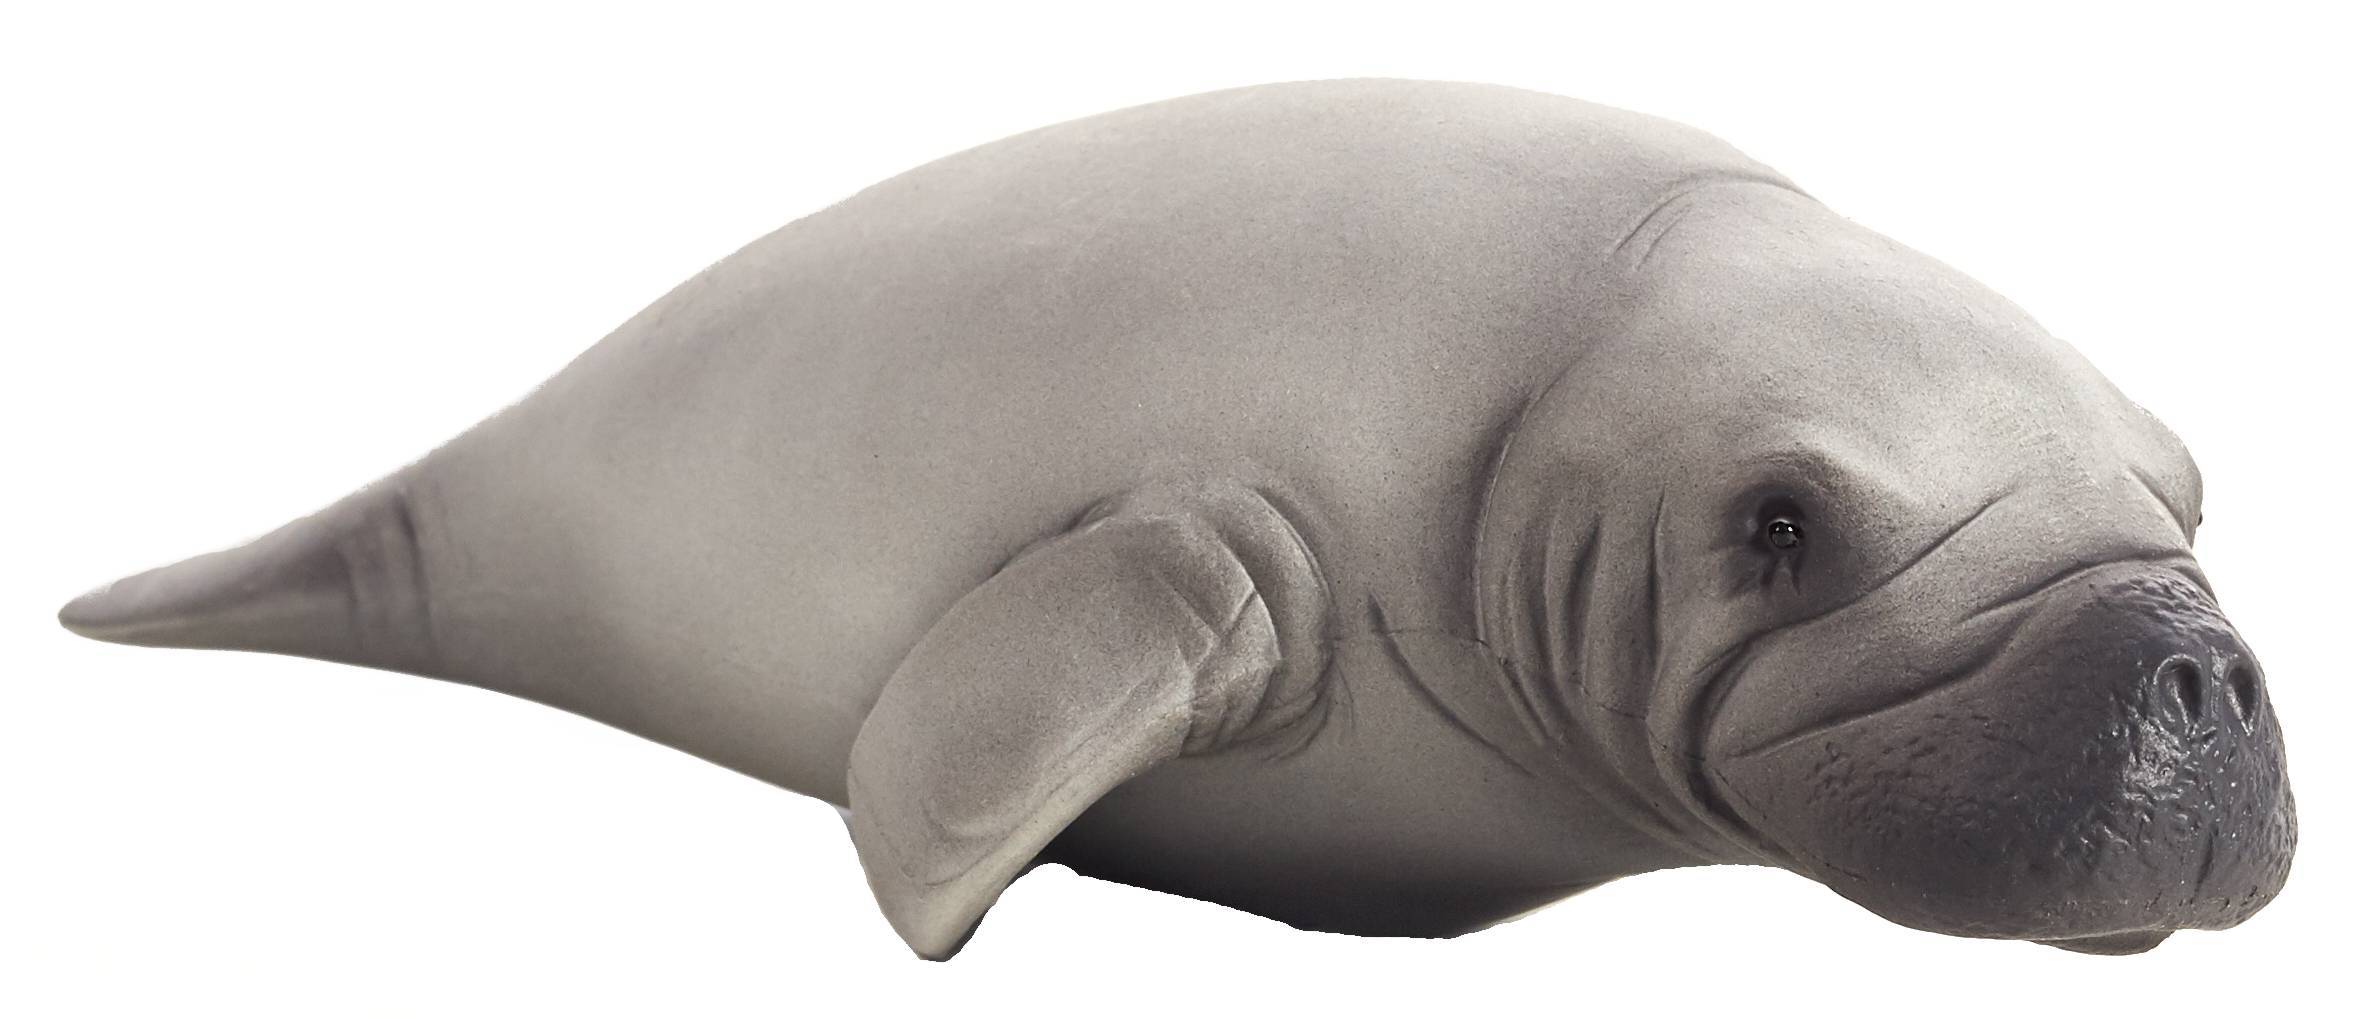 File:Normal ian-symbol-dugong